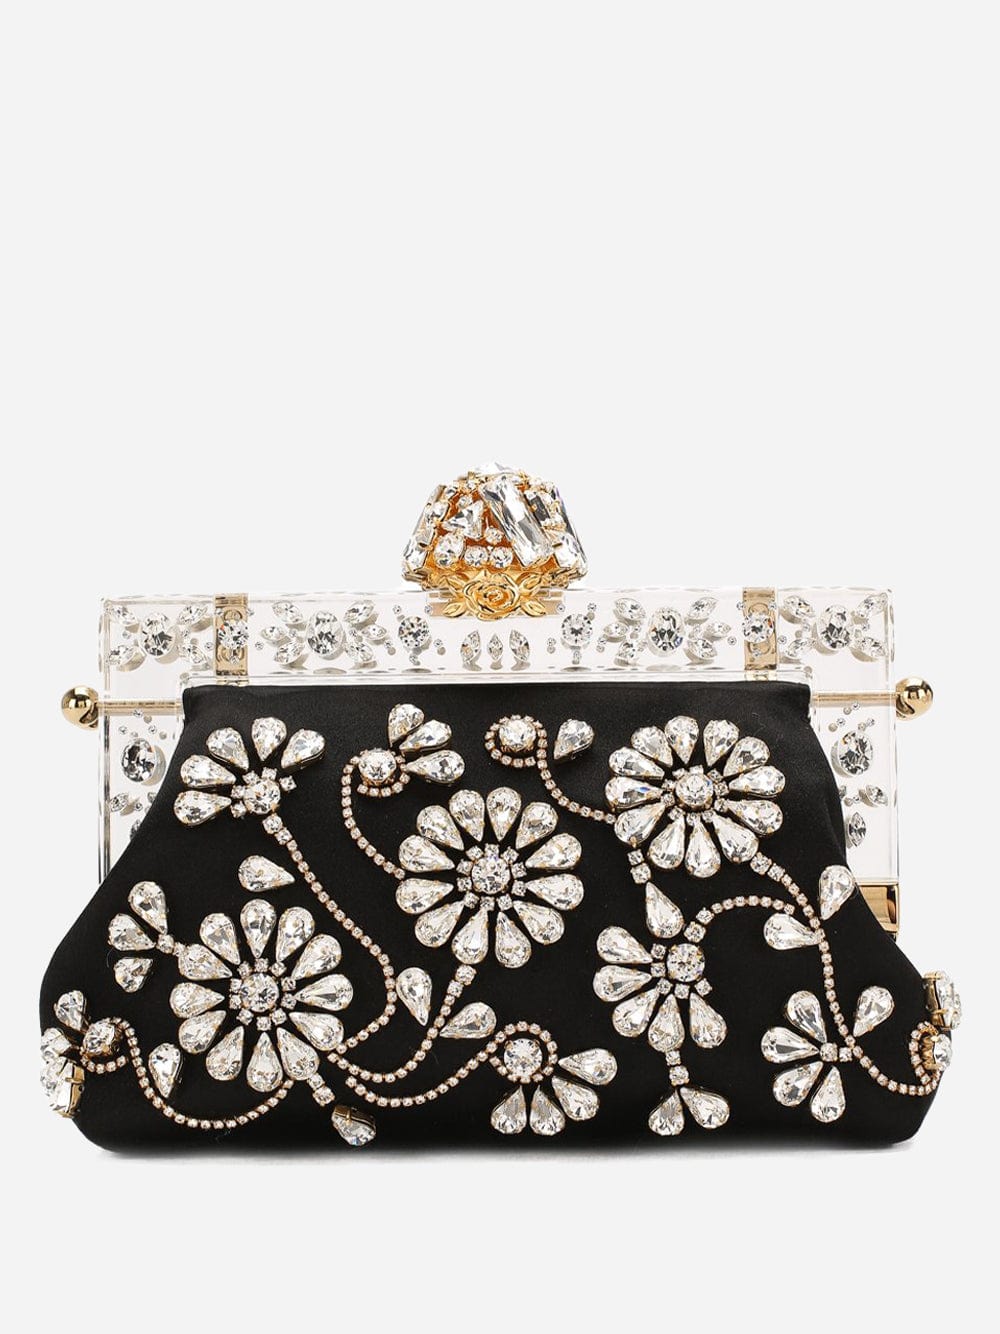 Dolce & Gabbana Vanda Crystal-Embellished Satin Clutch Bag